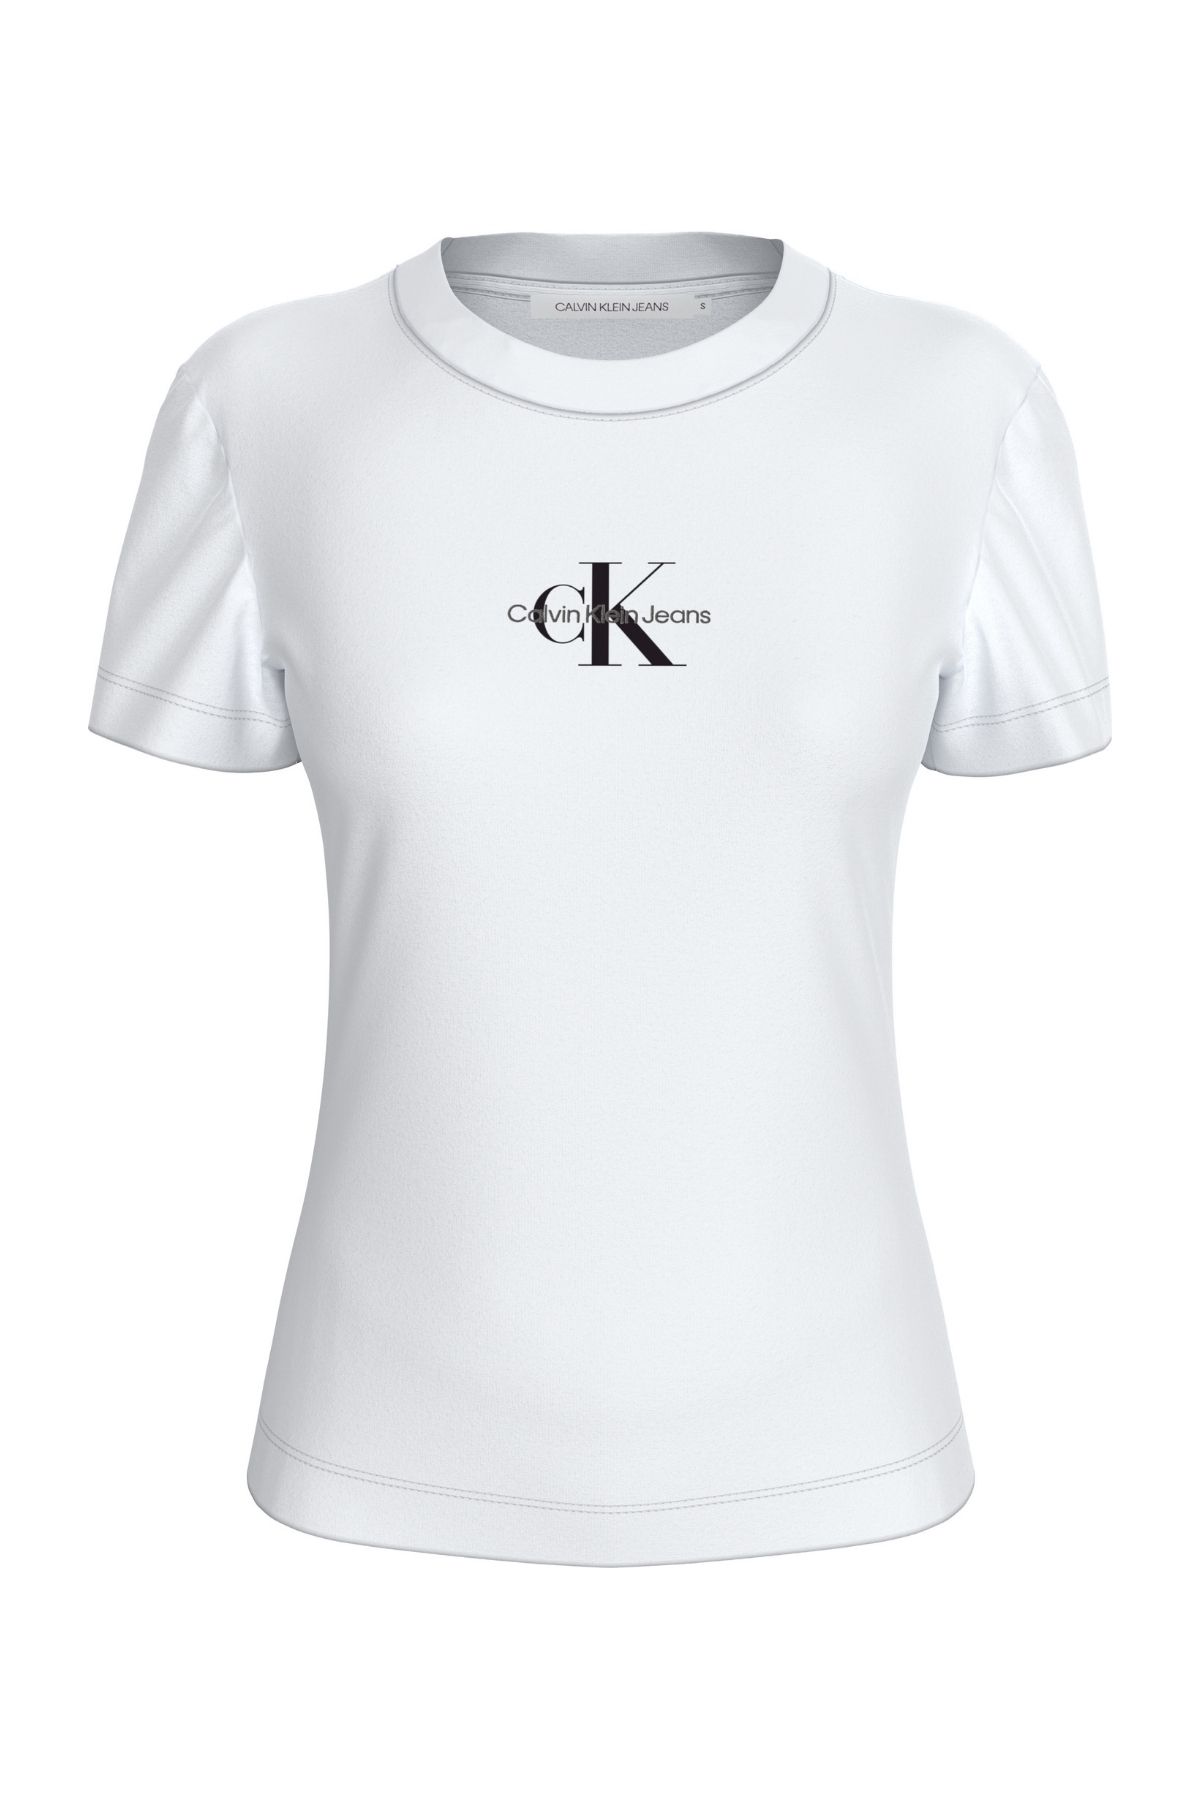 Calvin Klein Kadın Marka Logolu Günlük Kullanıma Uygun Beyaz T-Shirt J20j222564-Yaf